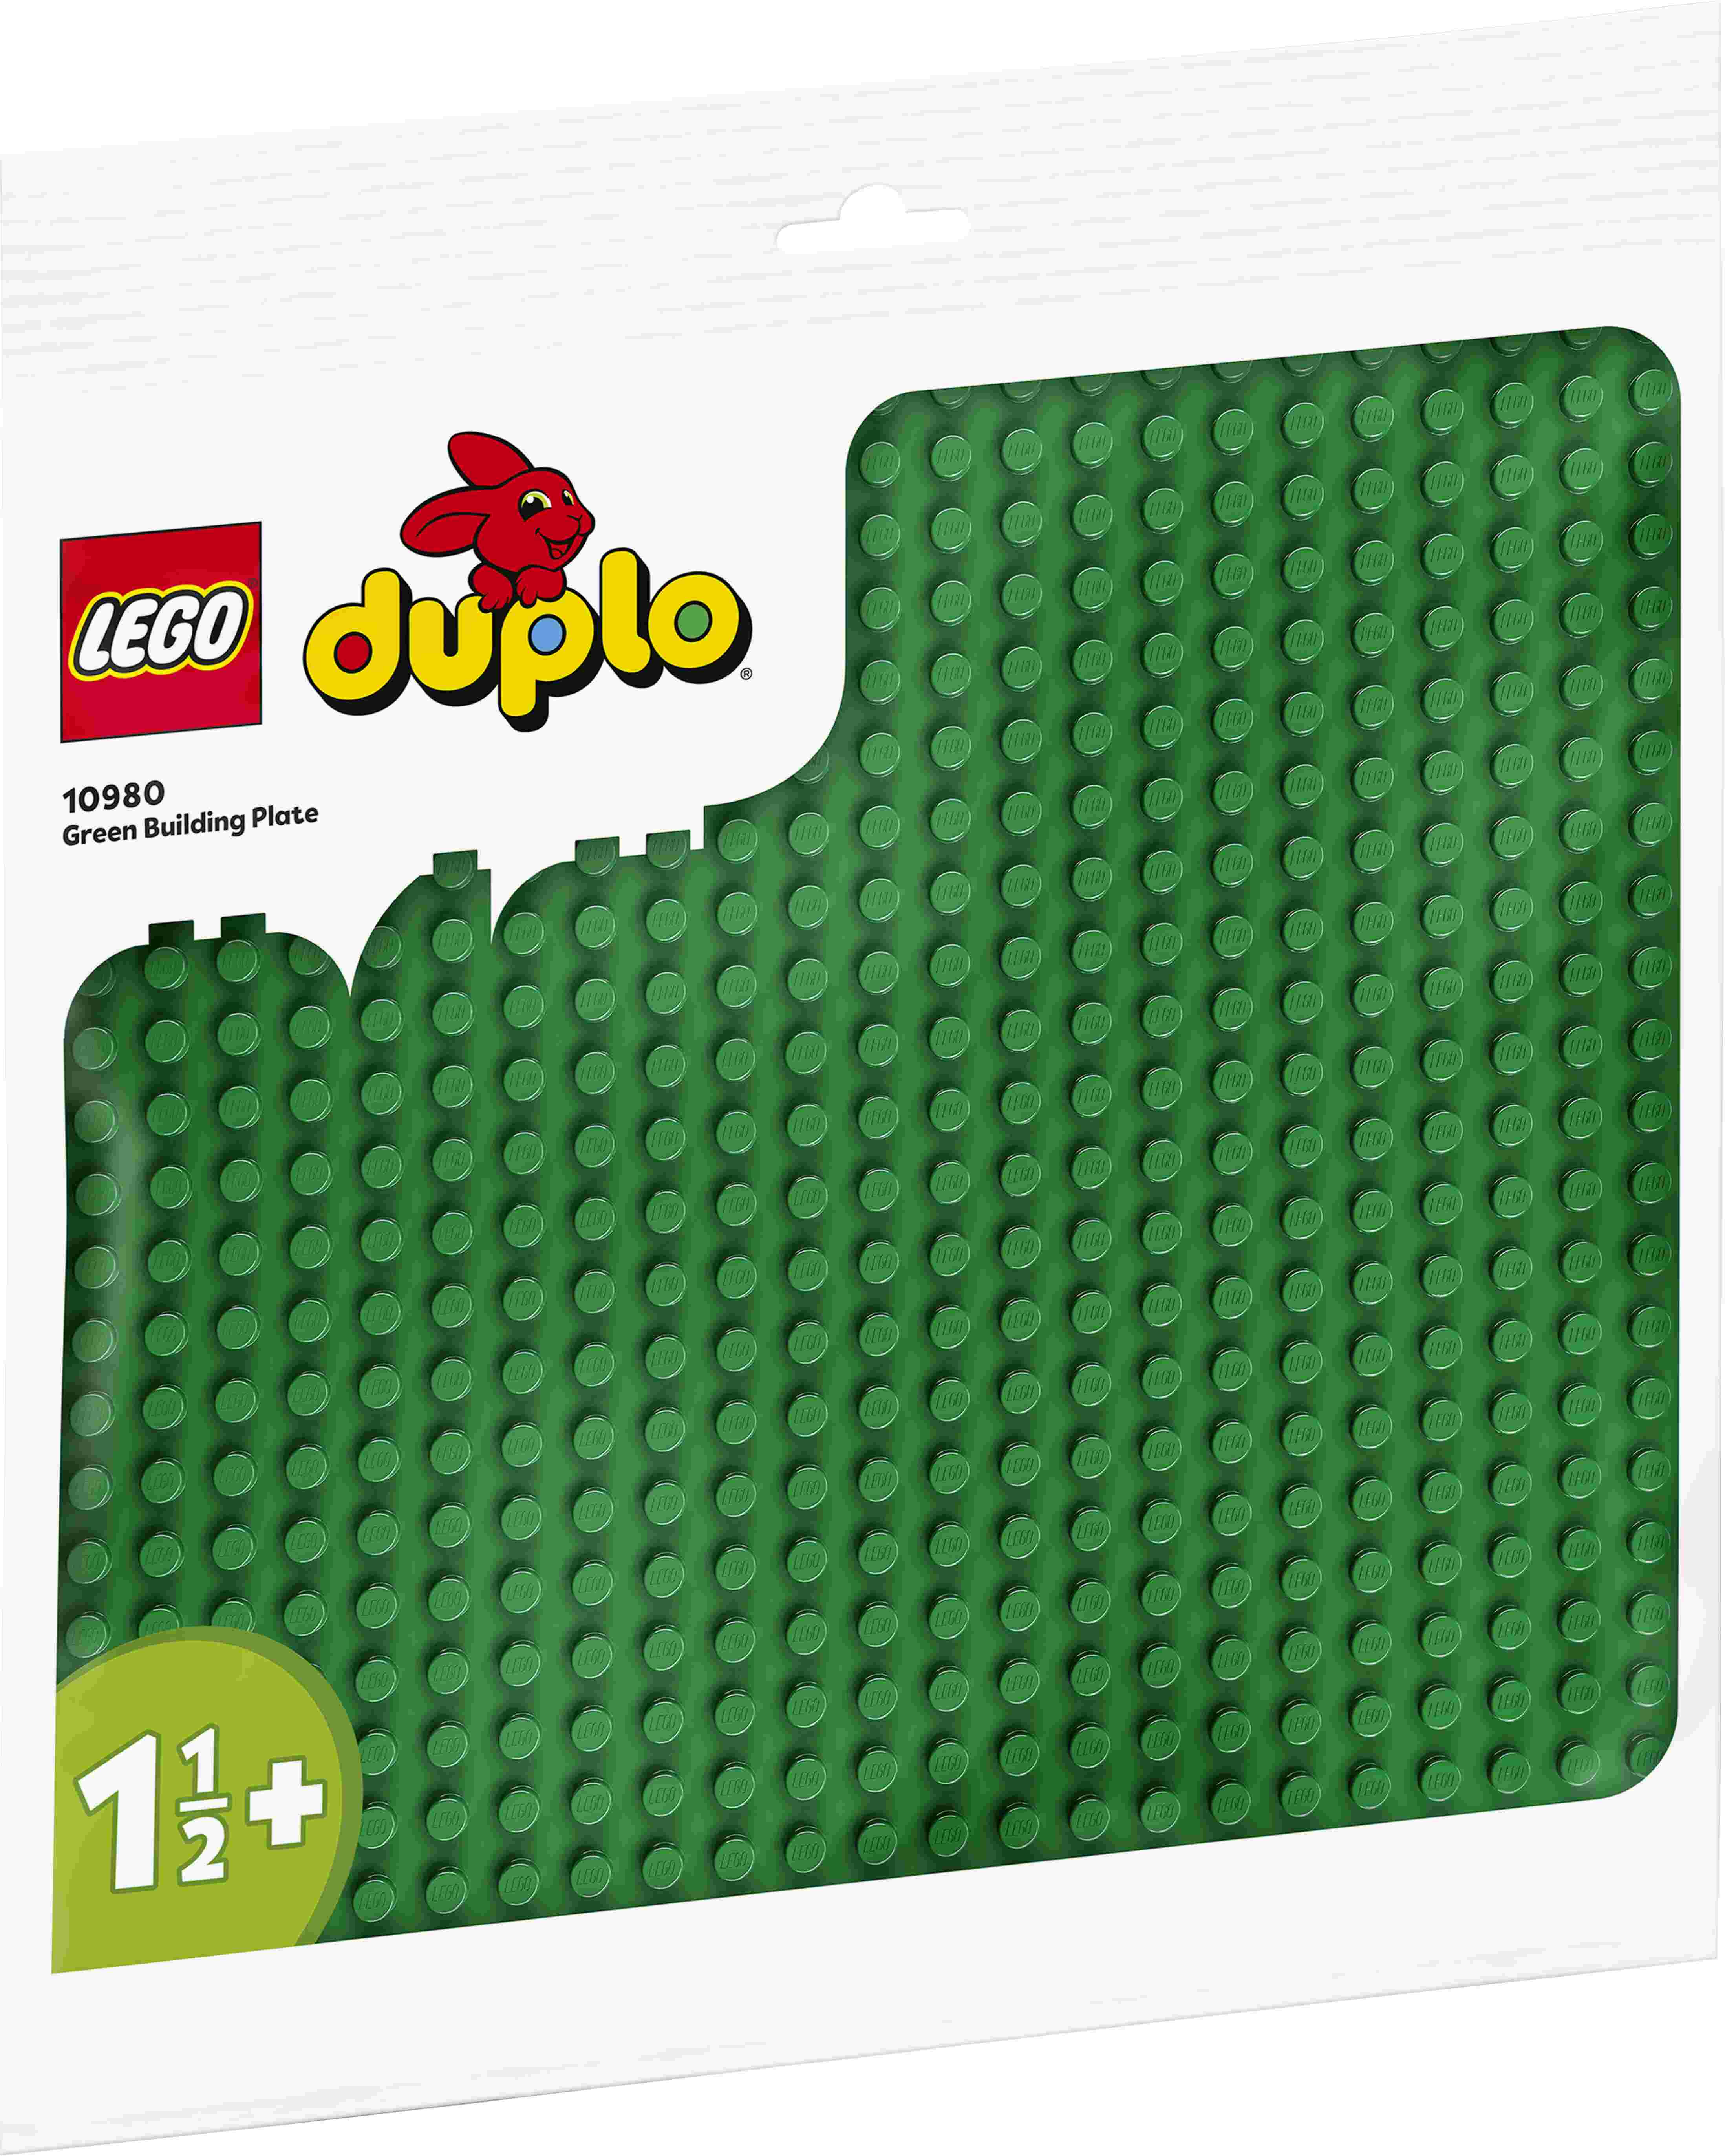 LEGO 10980 DUPLO Bauplatte in Grün, 38 cm x 38 cm, 24x24 Noppen